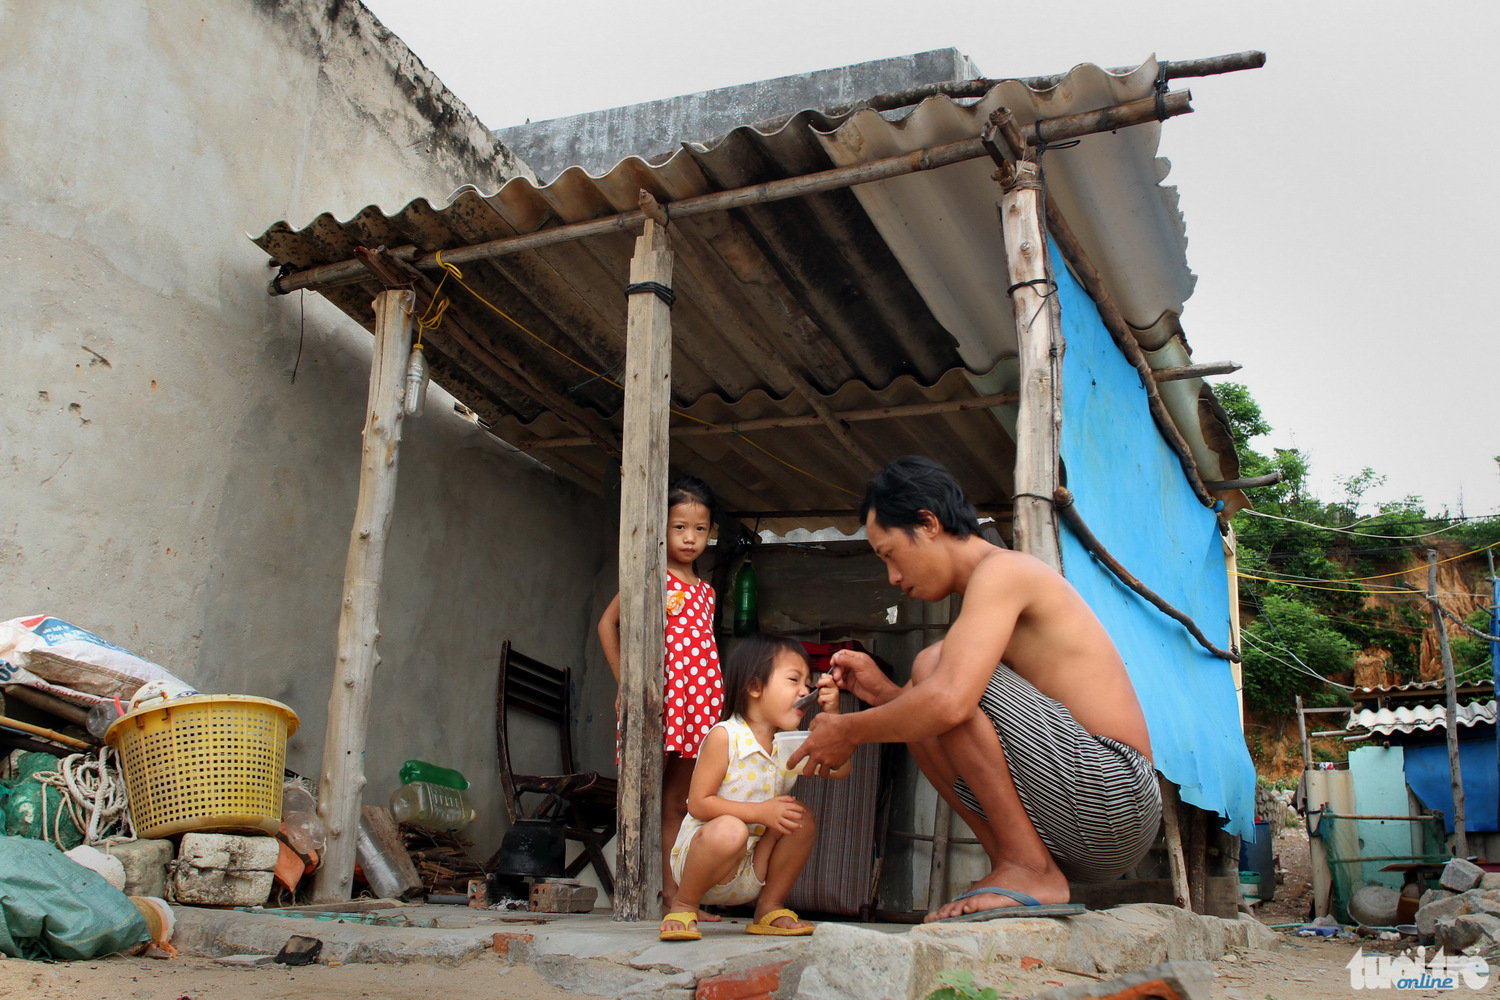 Anh Nguyễn Văn Hưng (30 tuổi) có ngôi nhà lớn đã bị đổ nên phải dựng lều sống tạm - Ảnh: PHẠM VĂN THÀNH